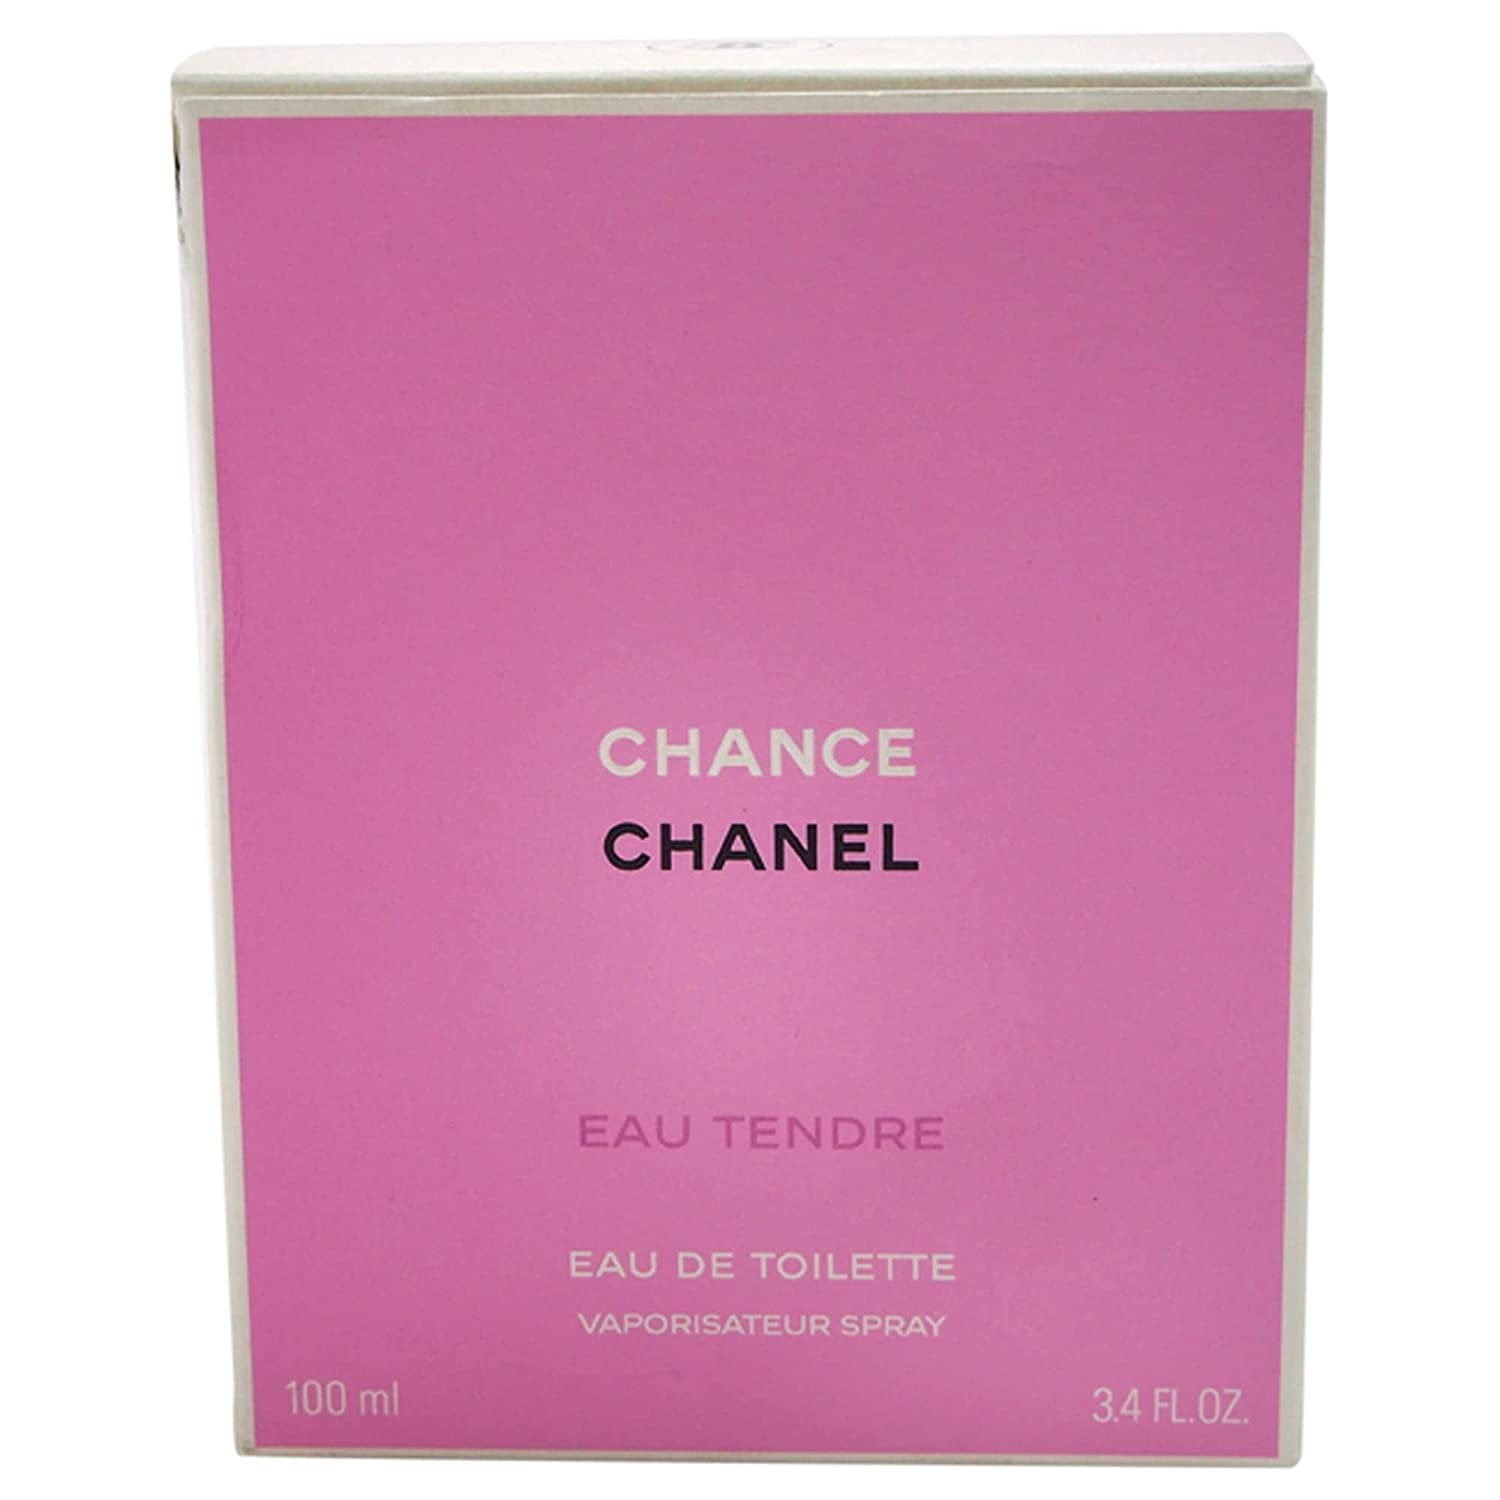 Chanel Chance Eau Tendre Eau De Parfum 3.4 oz Brand New